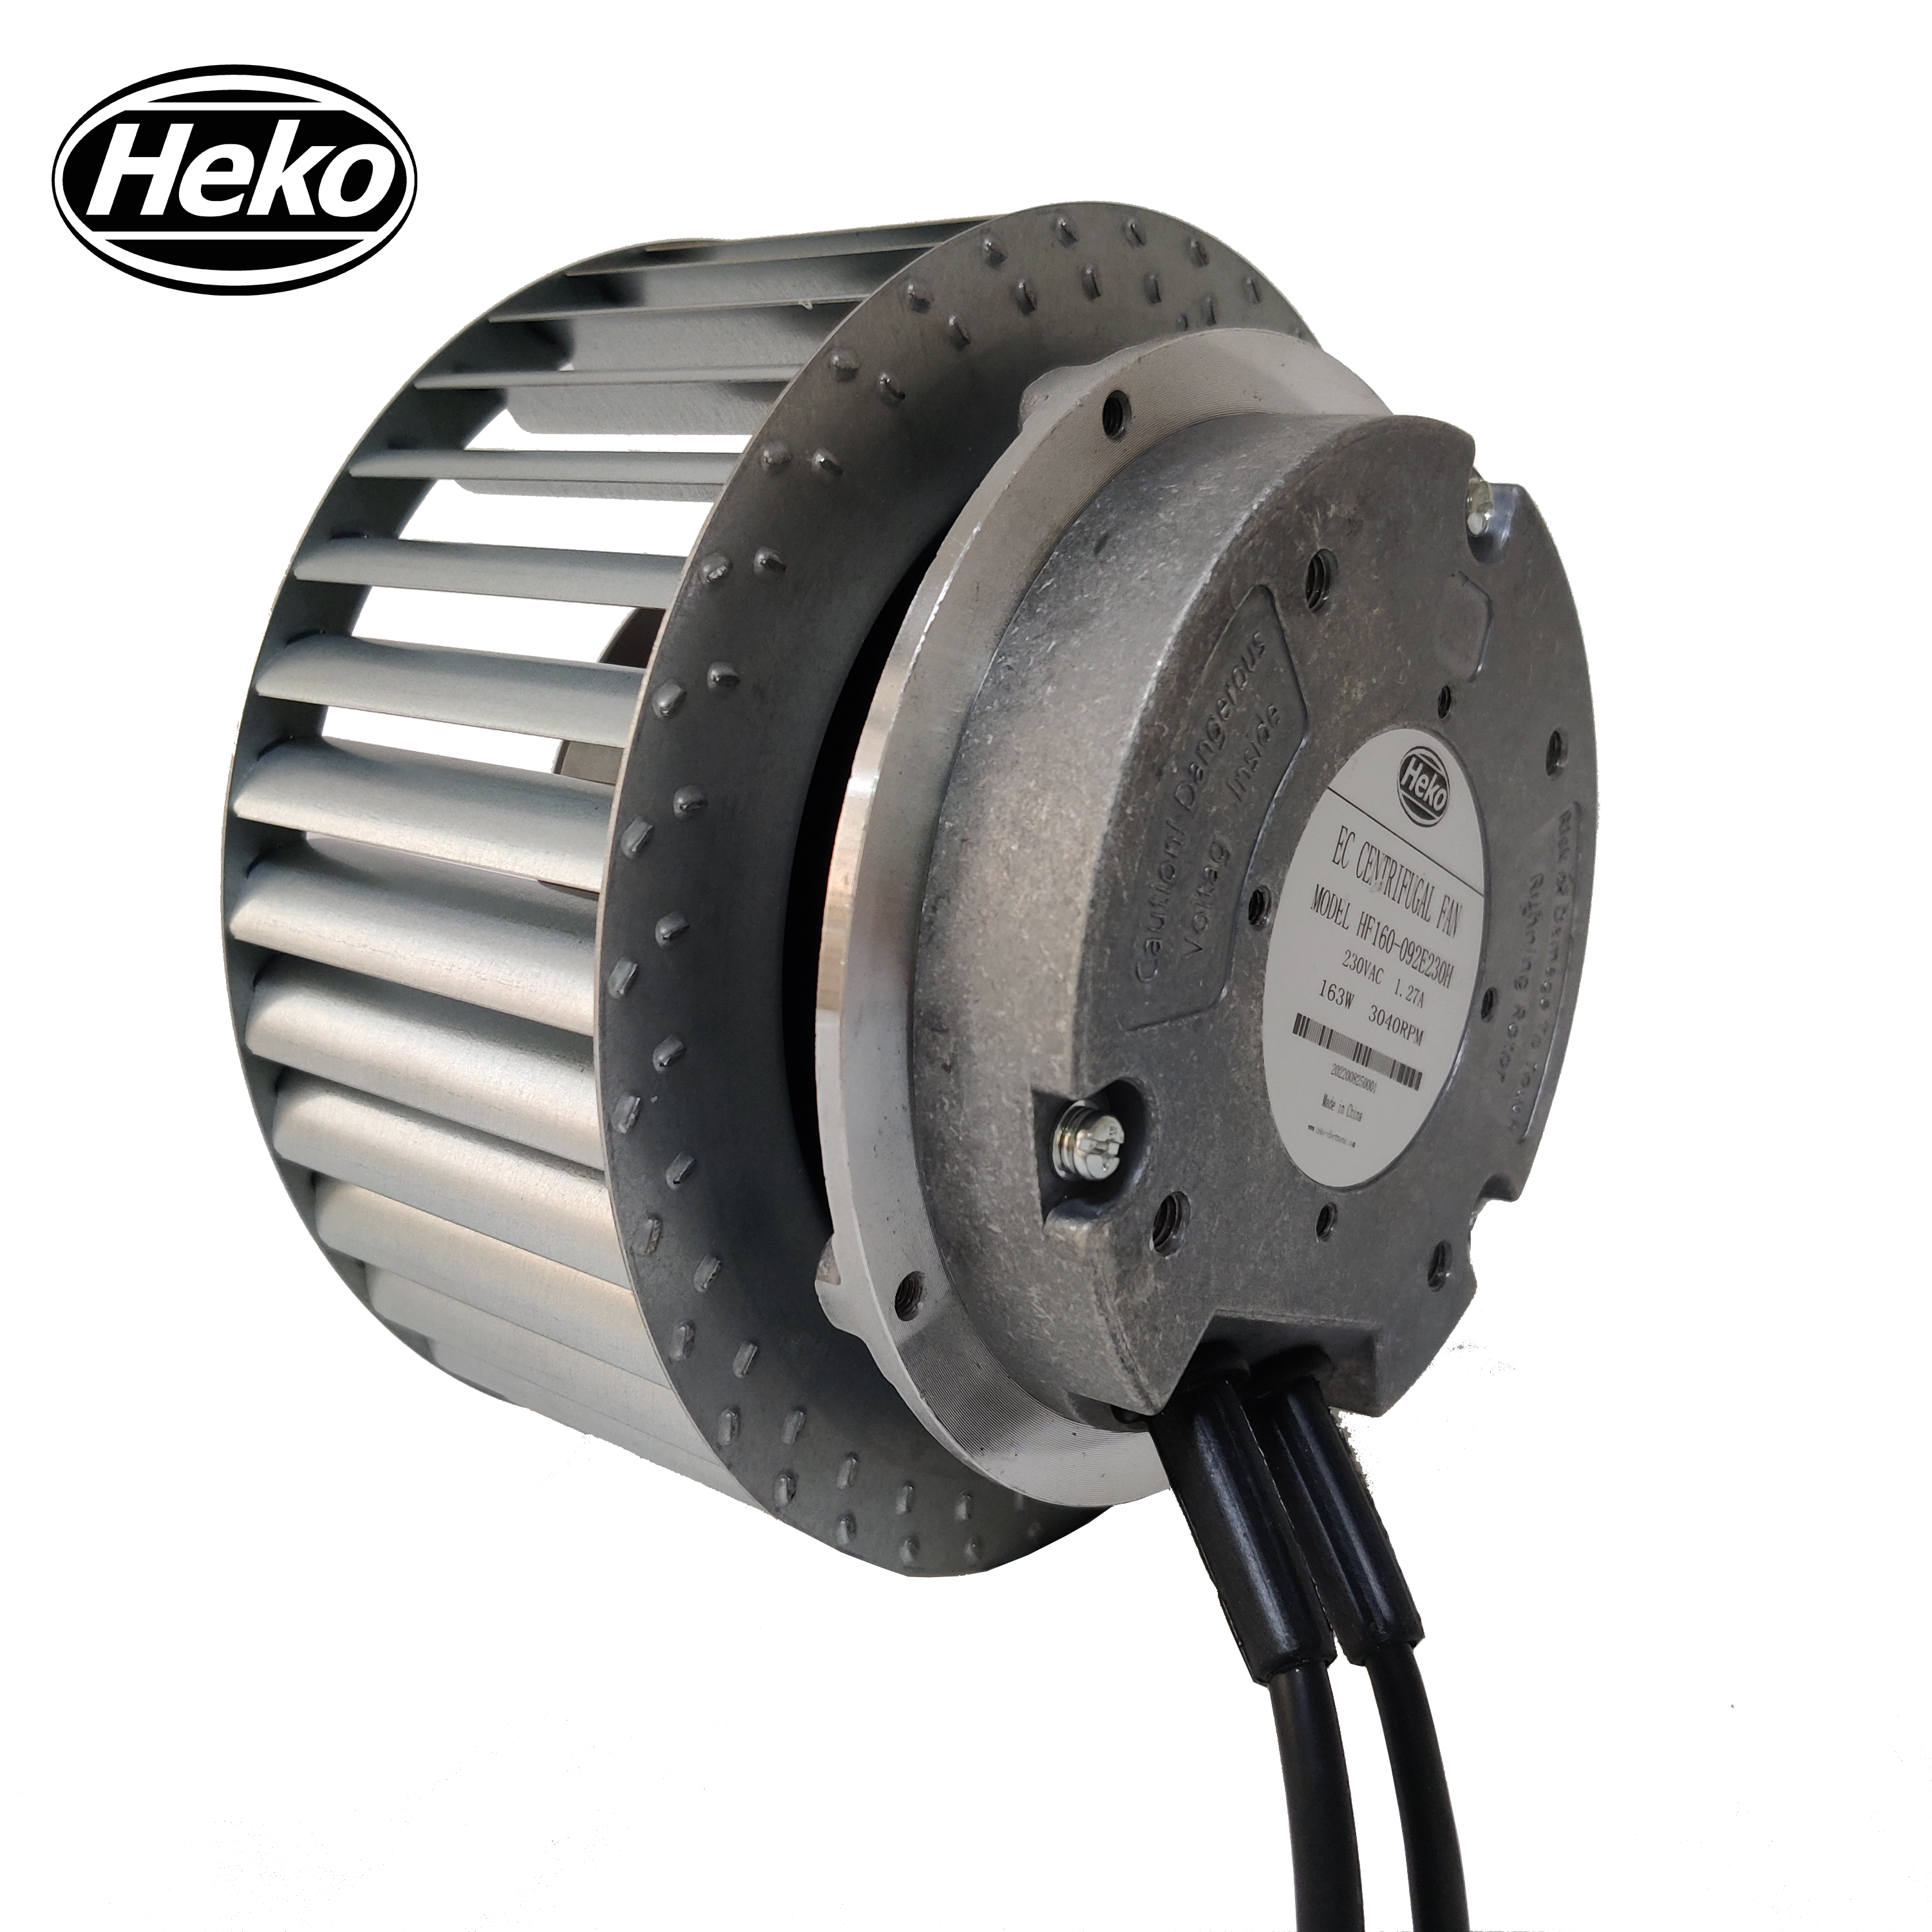 HEKO EC160mm 230V Industrial Forward Curved Centrifugal Fan